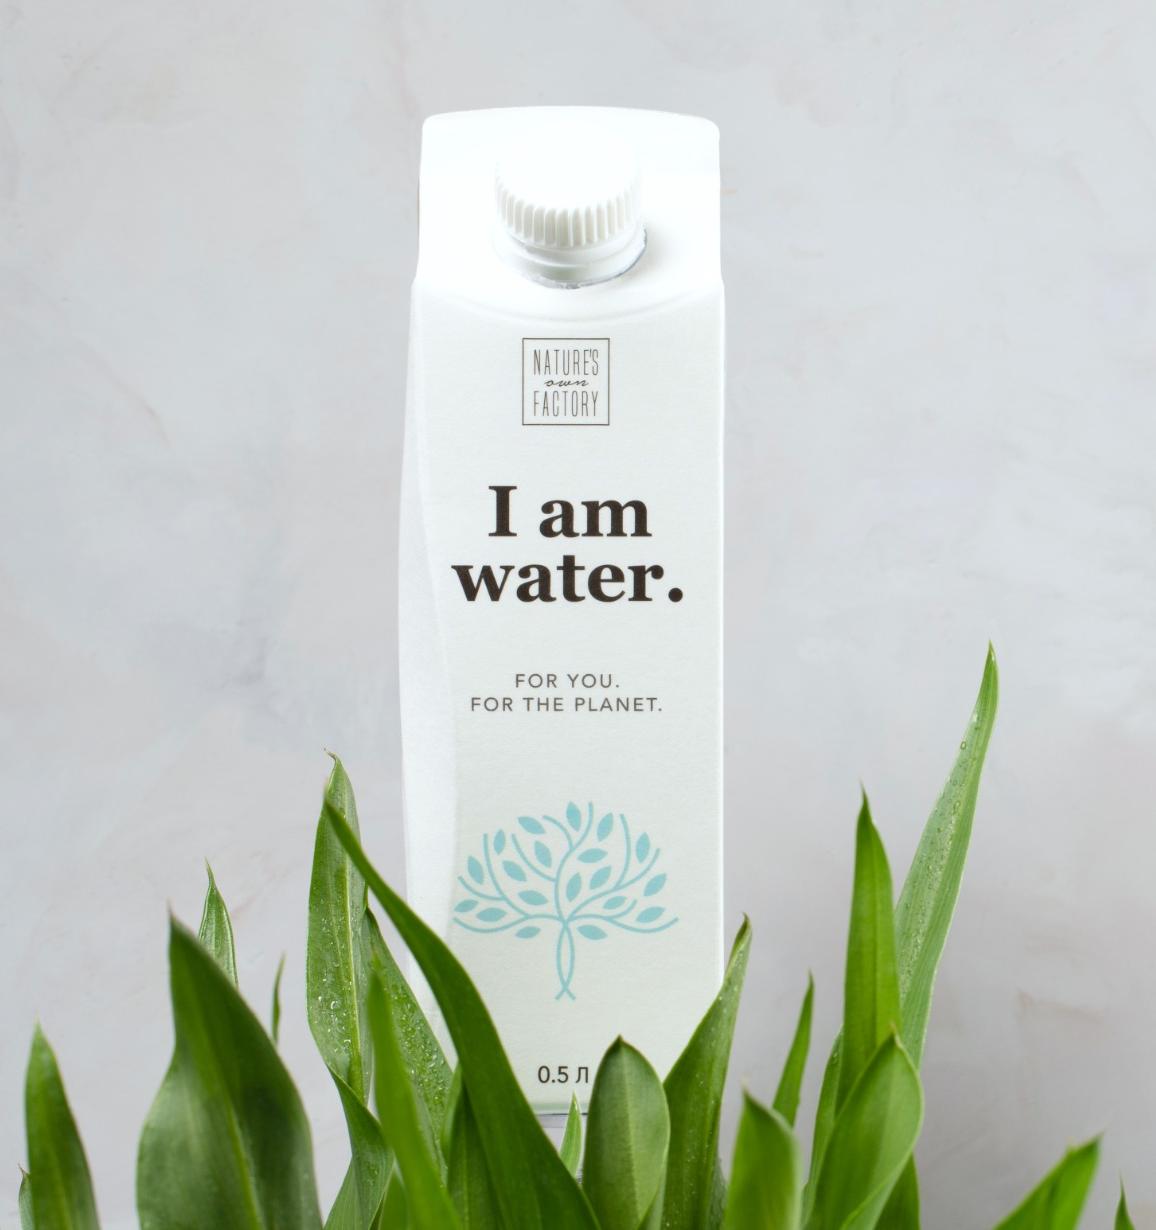 I am water: питьевая вода из подземного источника в экоупаковке Pure-Pak